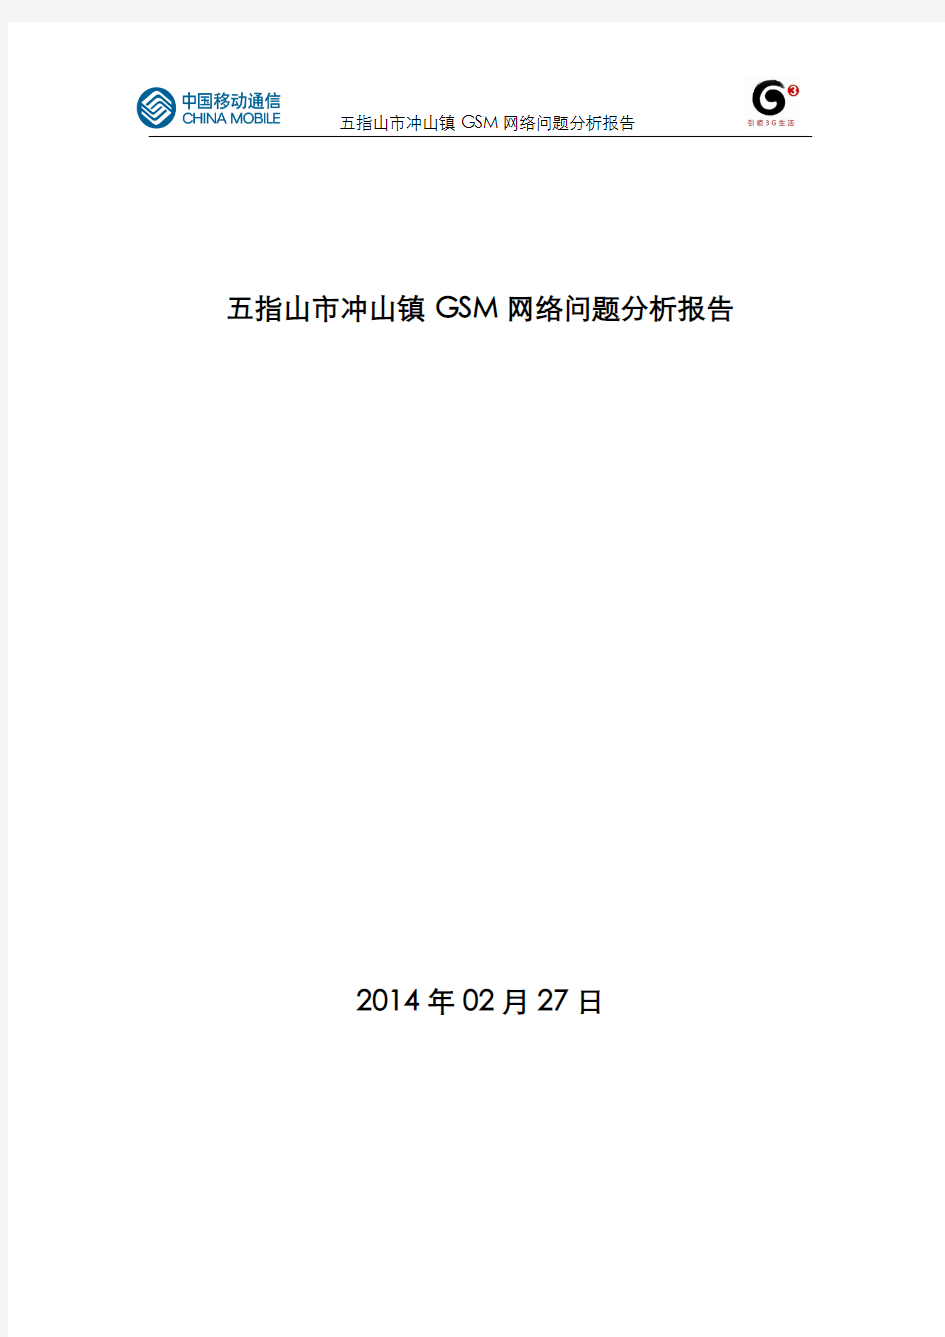 五指山市冲山镇GSM网络下载速率低问题分析报告_20140303